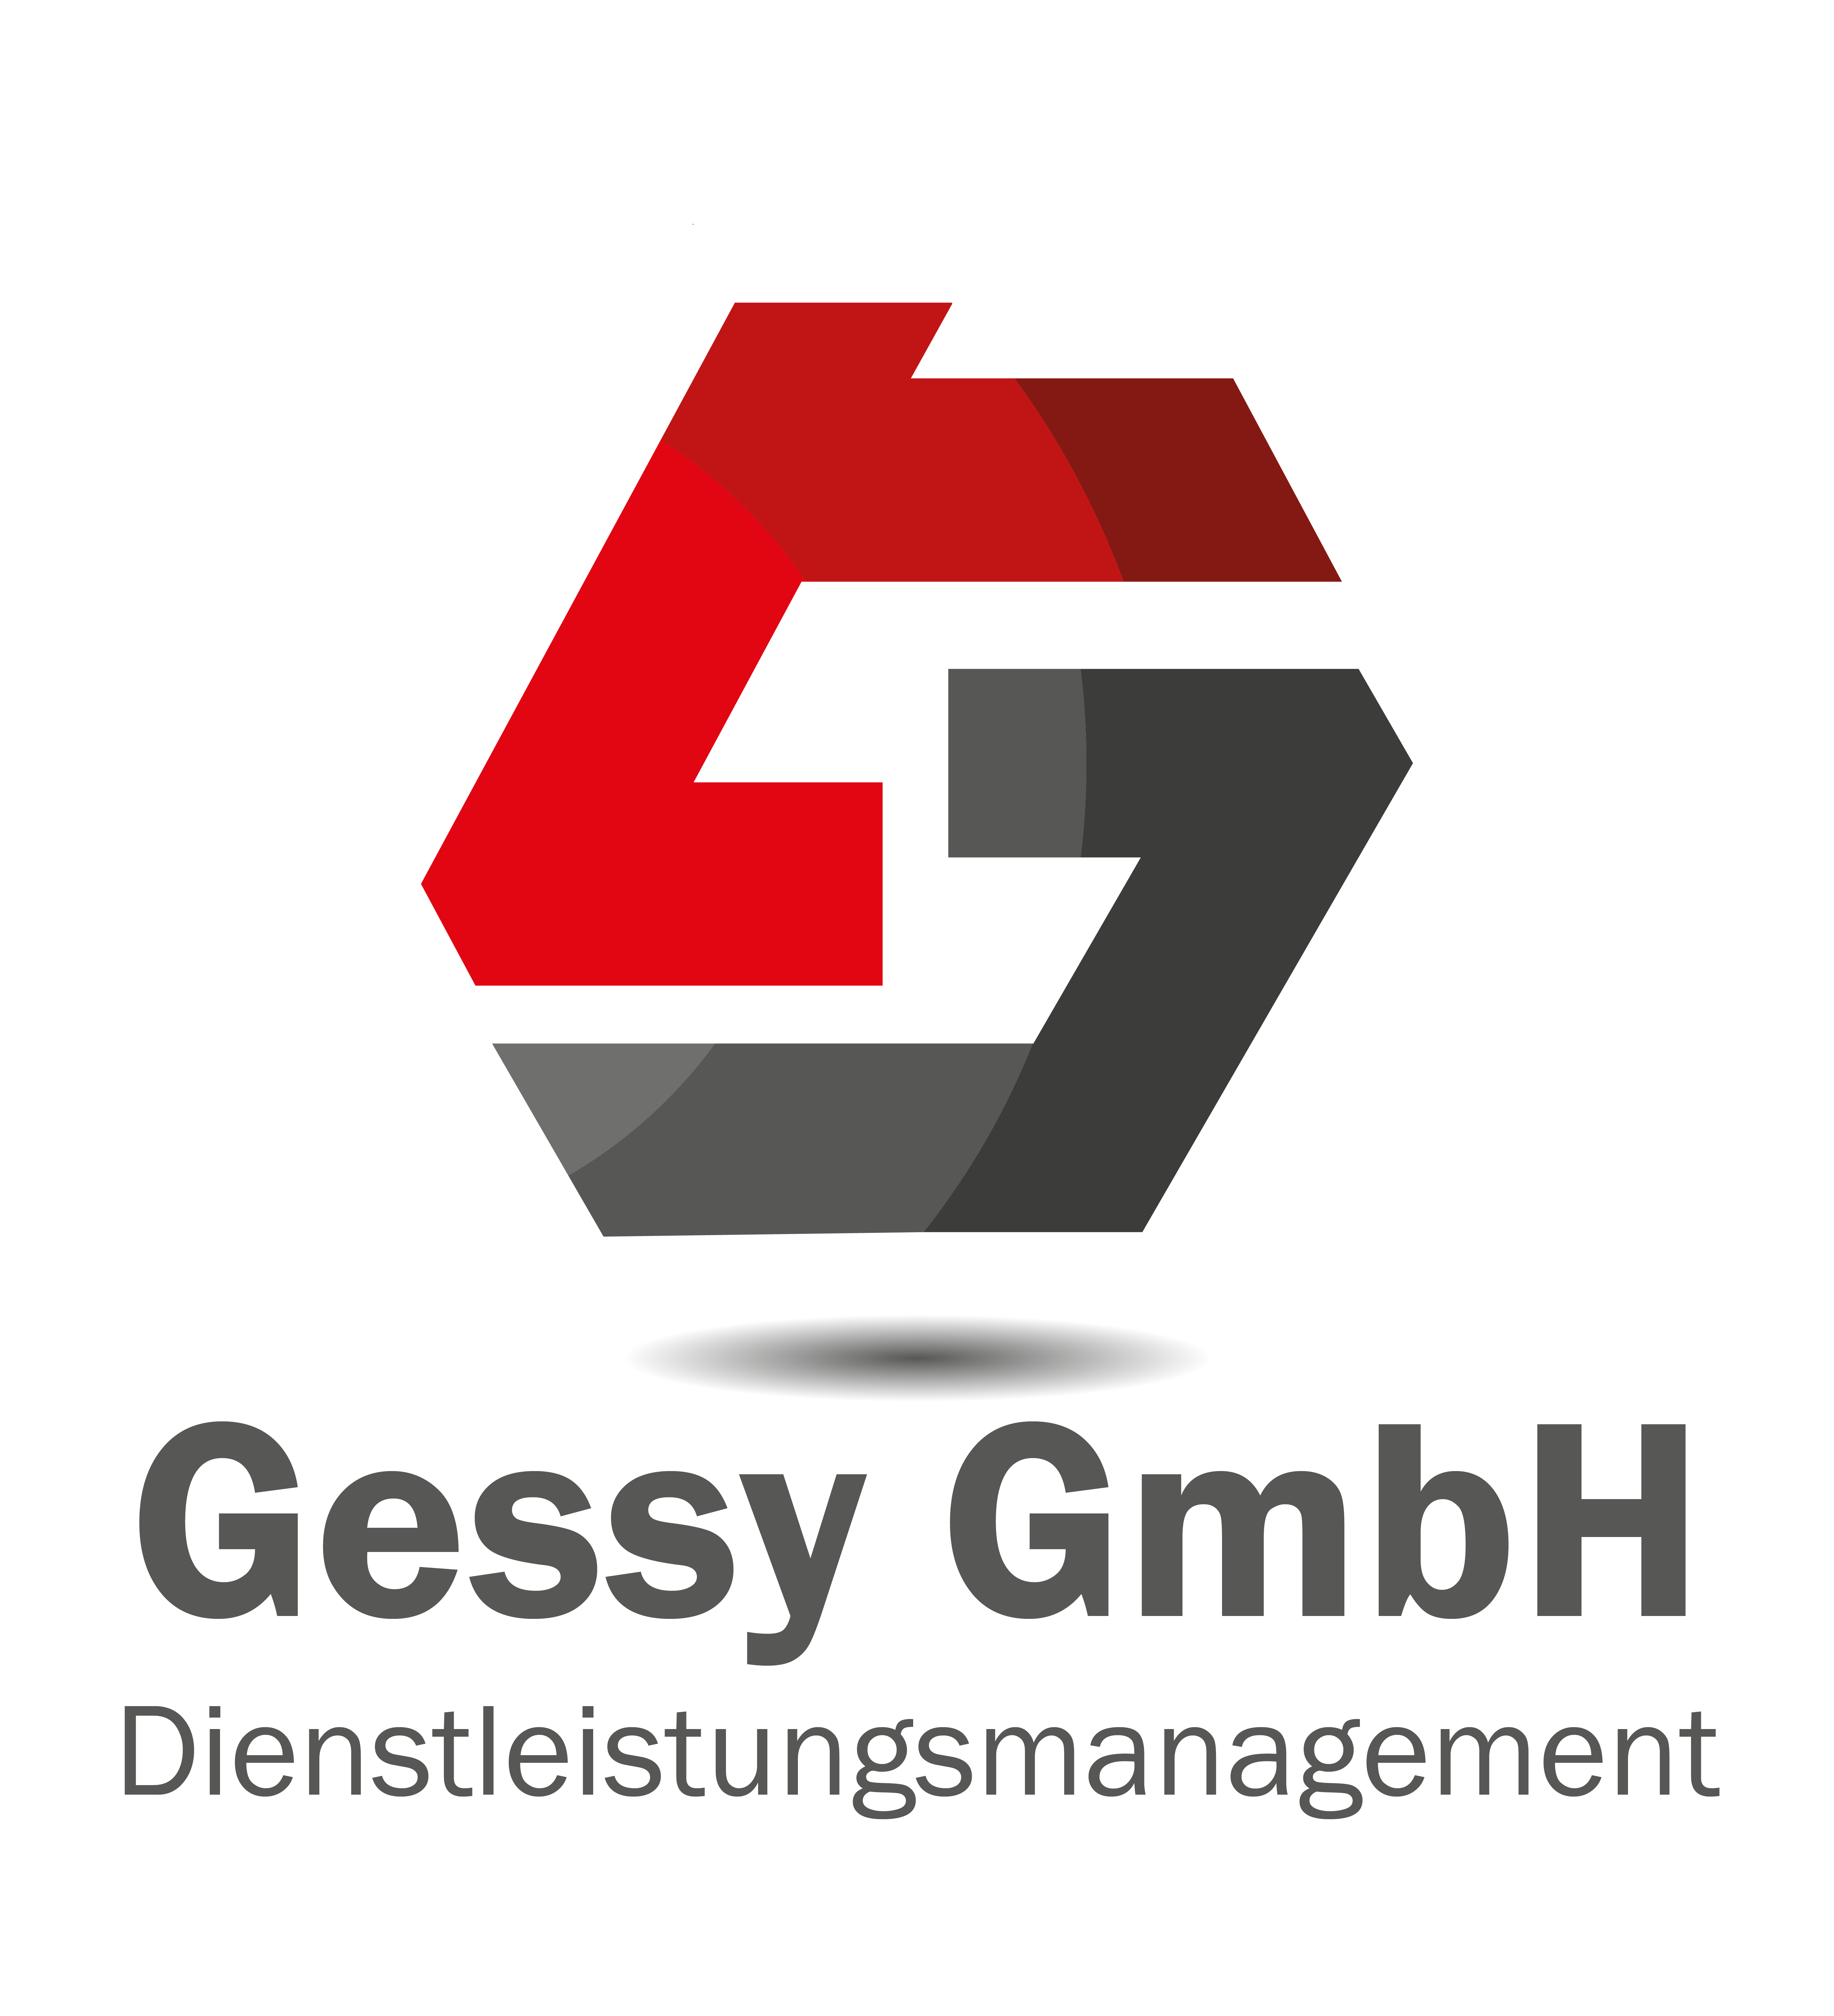 Gessy GmbH